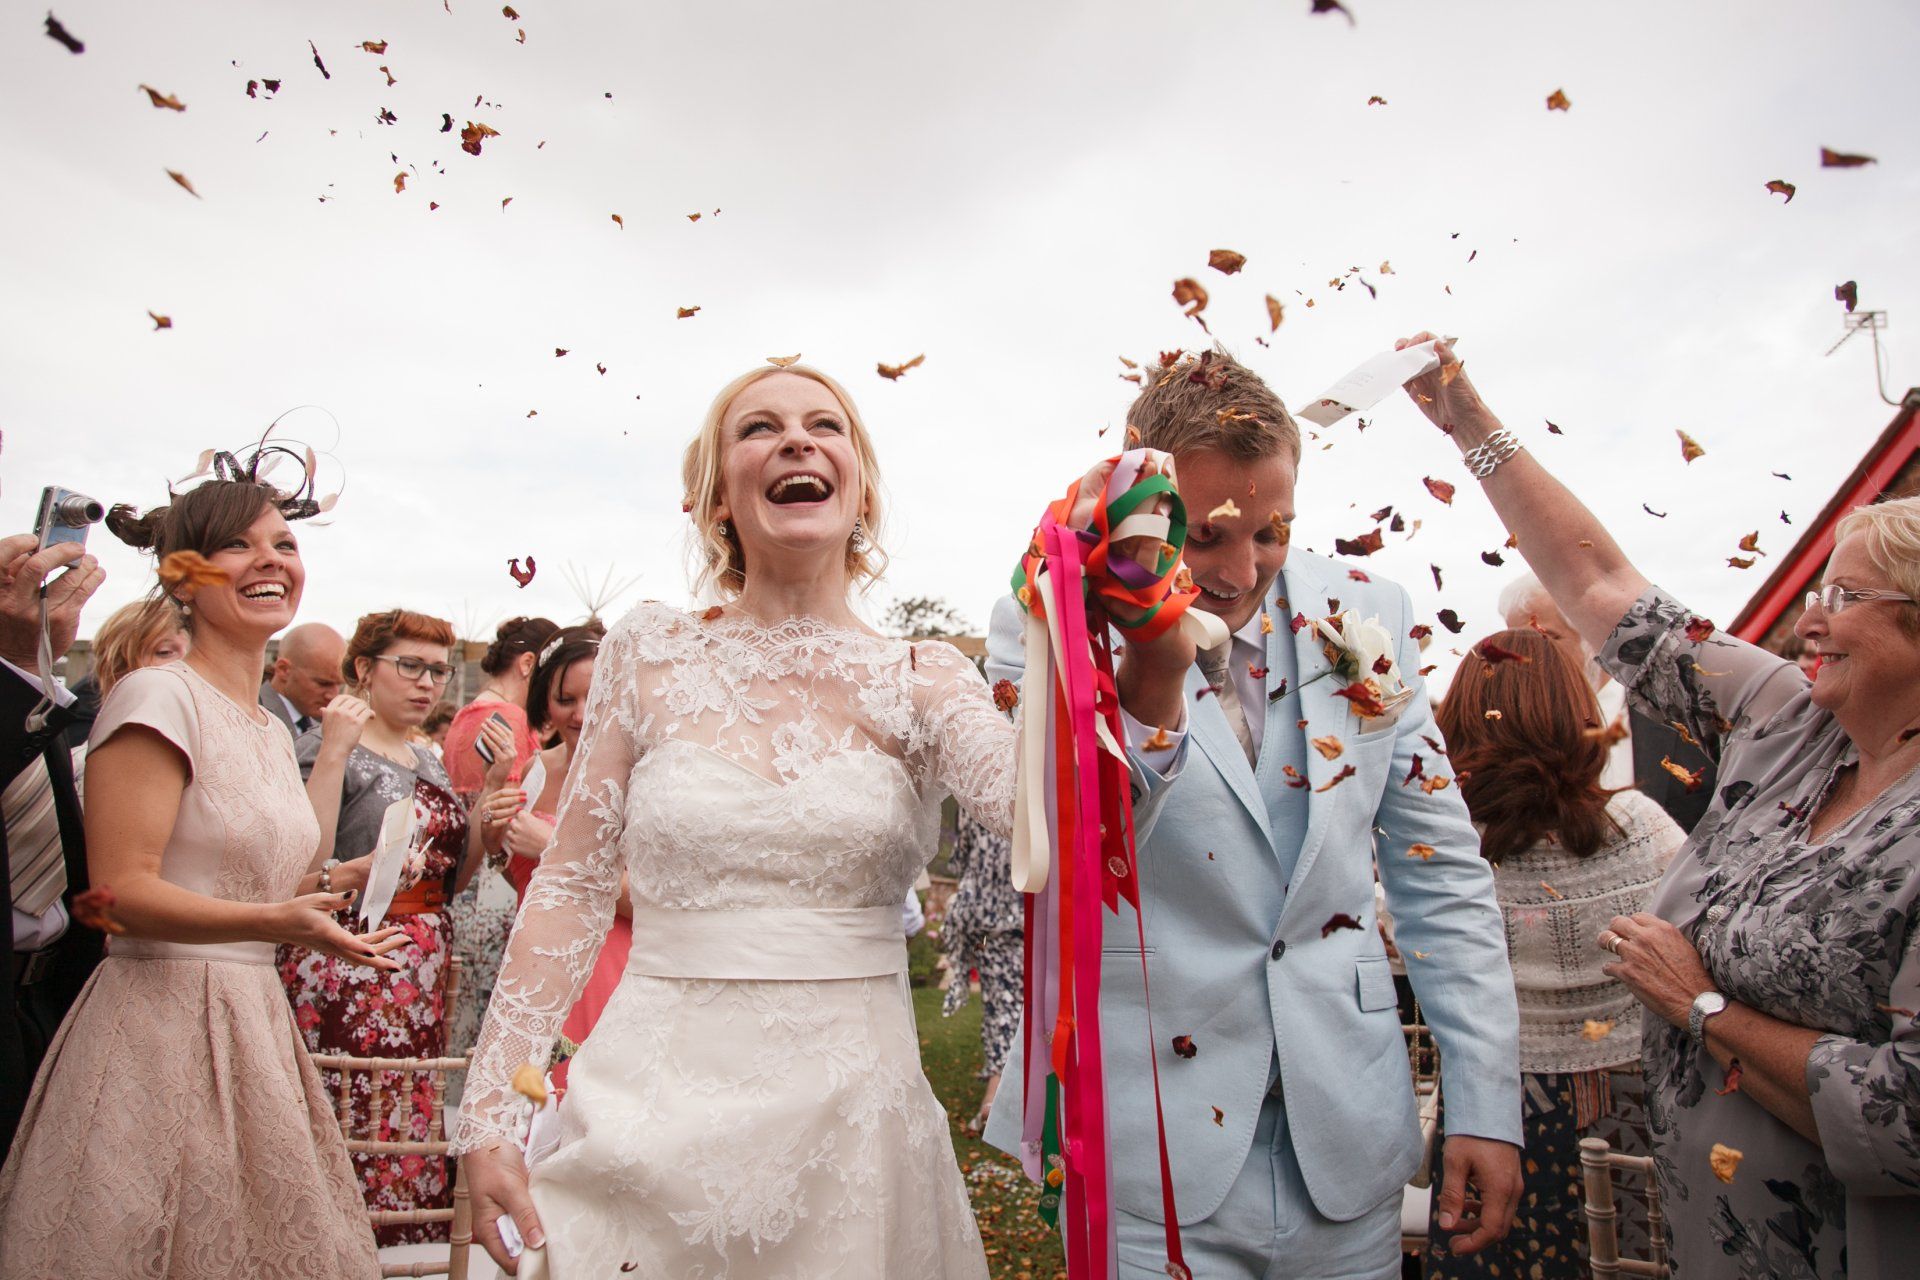 Confetti photo bride and groom in garden ceremony